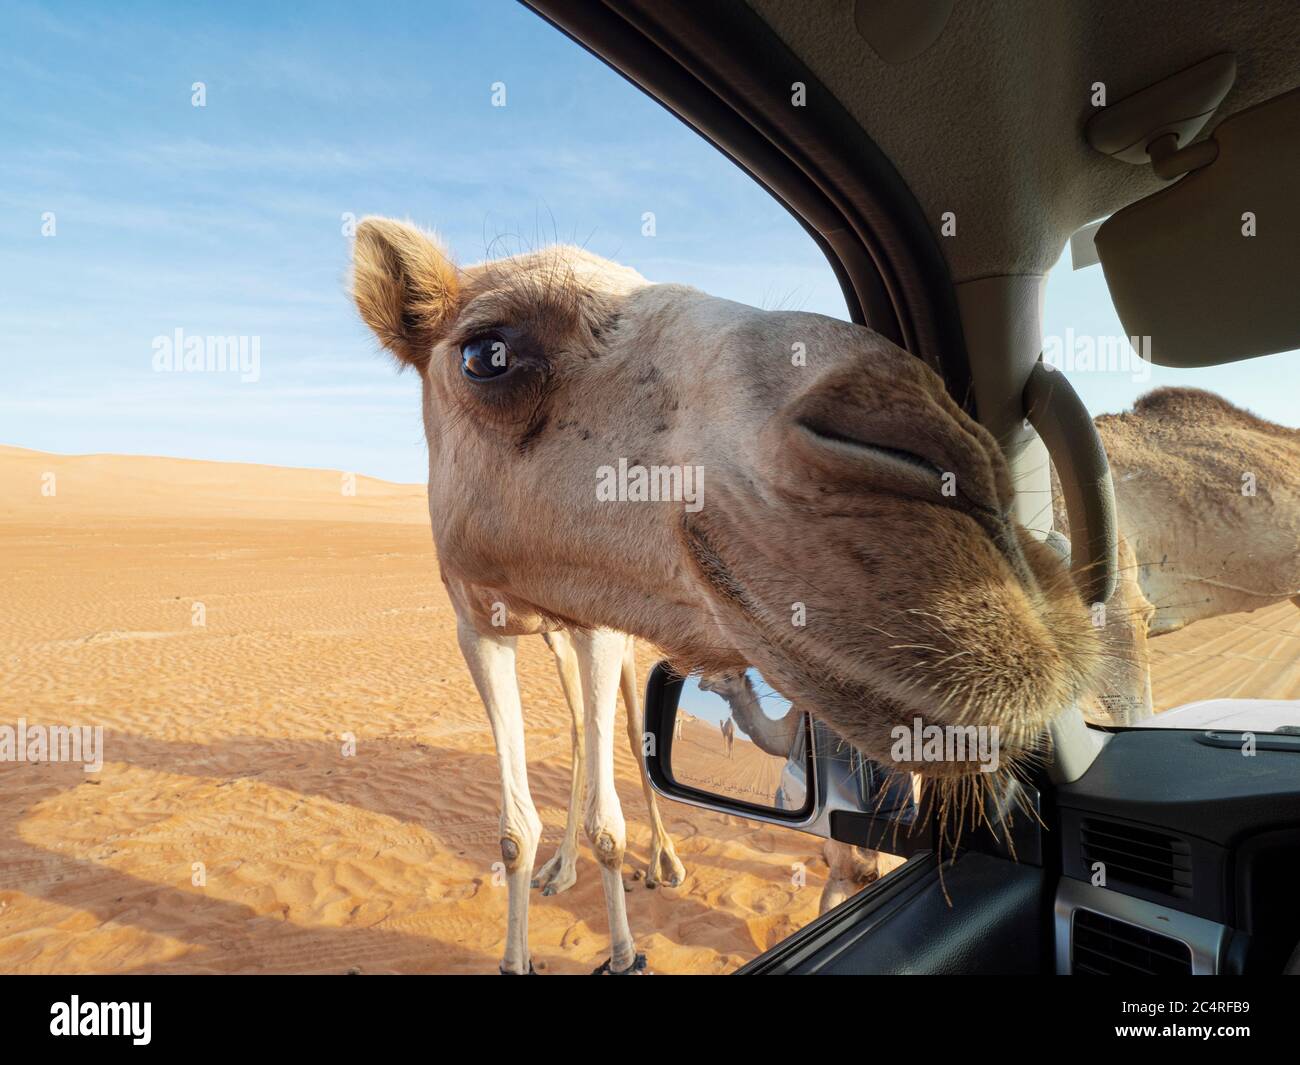 Cammello arabo, Camelus dromedarius, che si avvicina al nostro camion nelle sabbie desertiche di Ramlat al Wahiba, Sultanato dell'Oman. Foto Stock